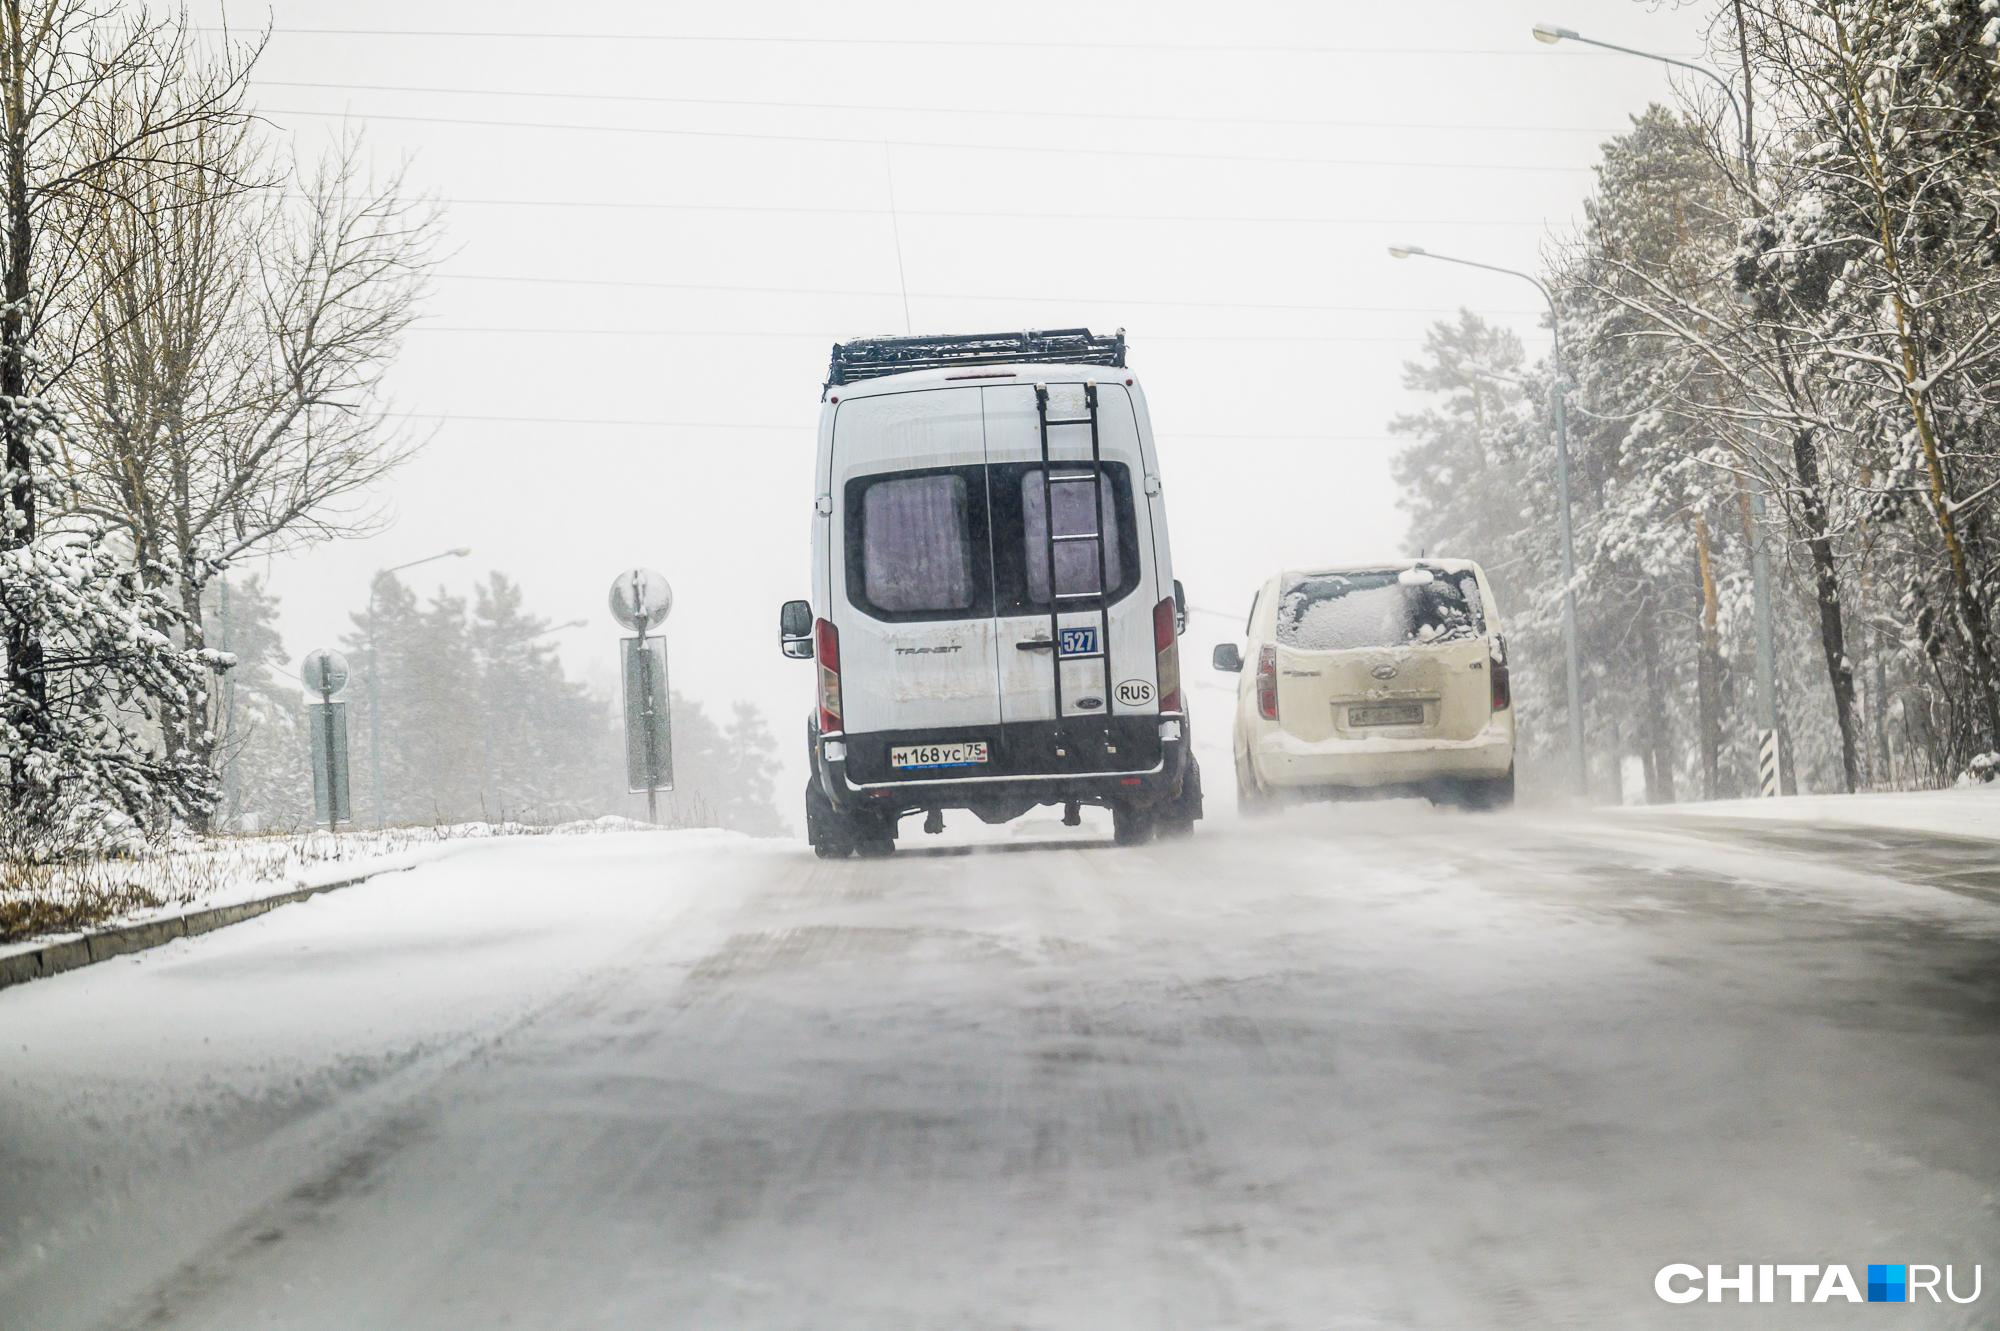 Жители Карповки под Читой жалуются на пропажу единственного автобуса № 120